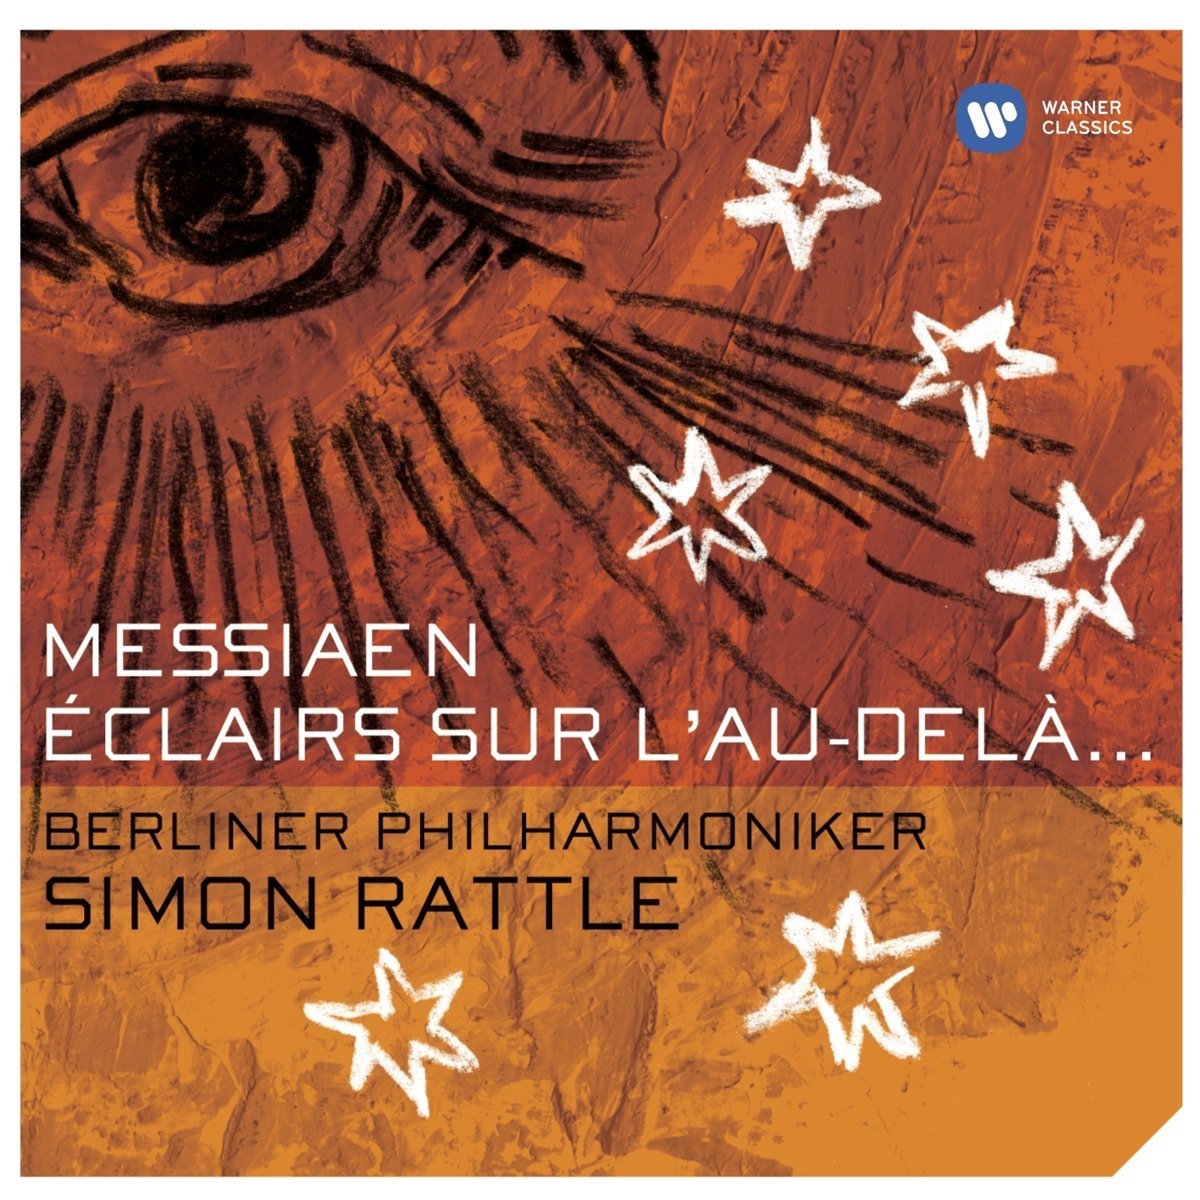 Berliner Philharmoniker, Simon Rattle – Messiaen: Eclairs sur l’au-del… (2004) [HDTracks FLAC 24bit/44,1kHz]